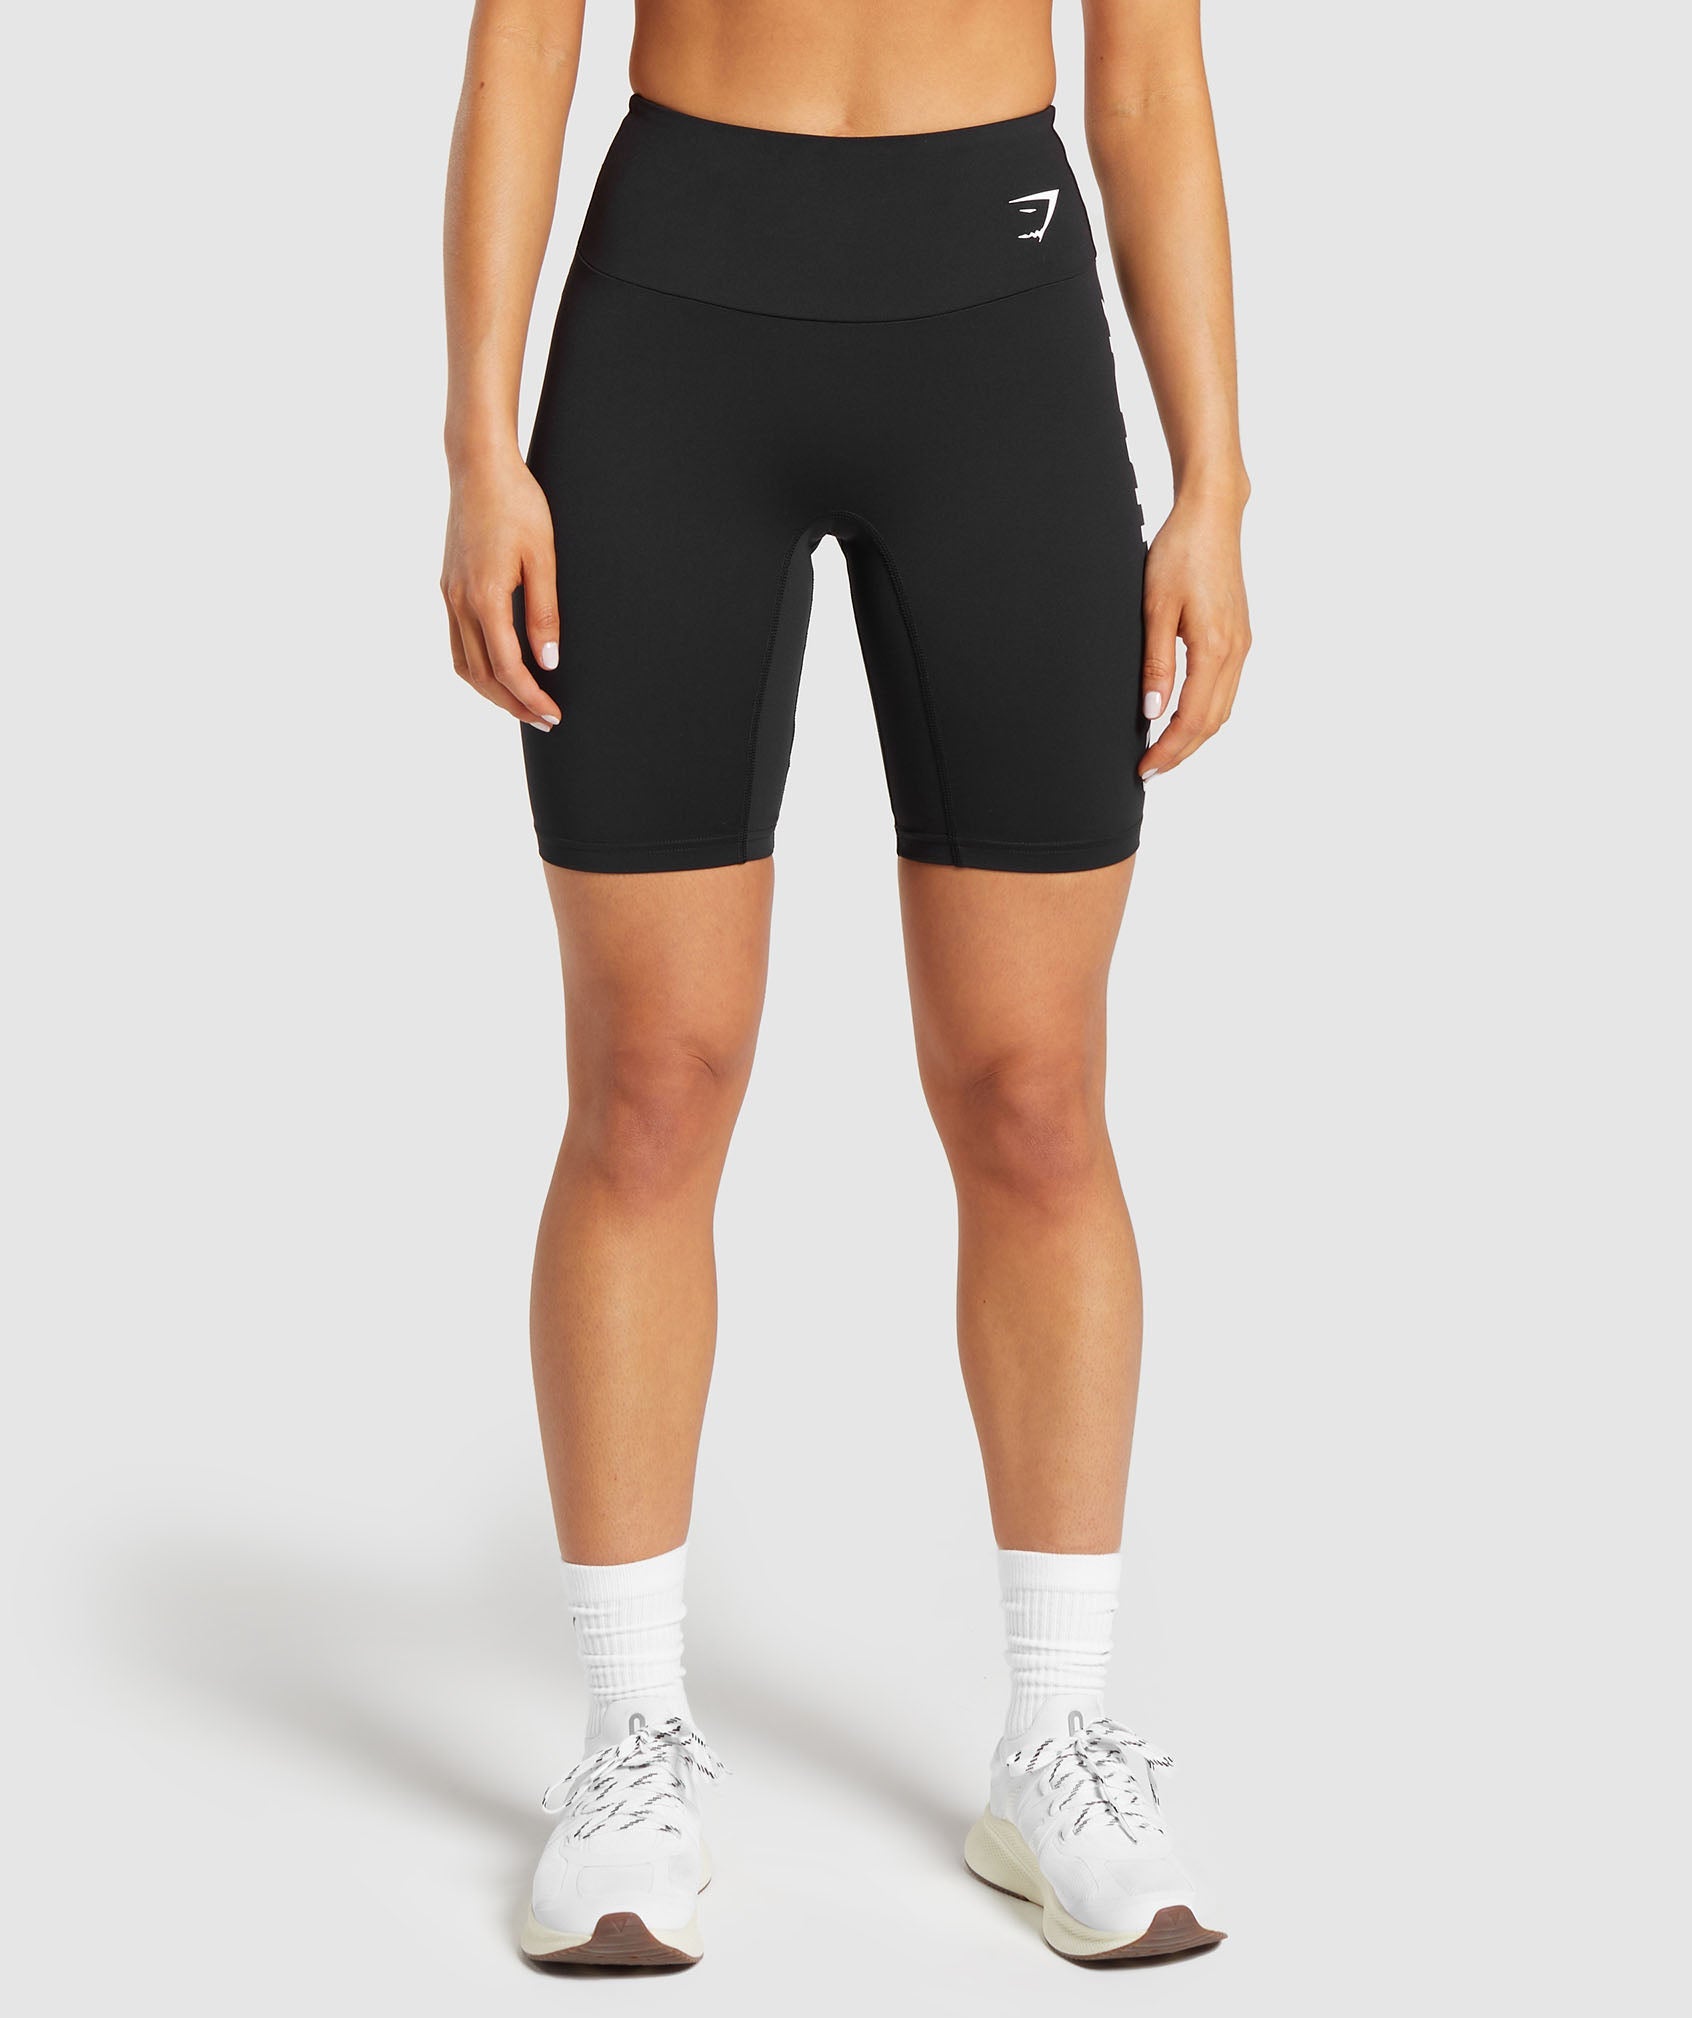 Fraction Shorts in Black